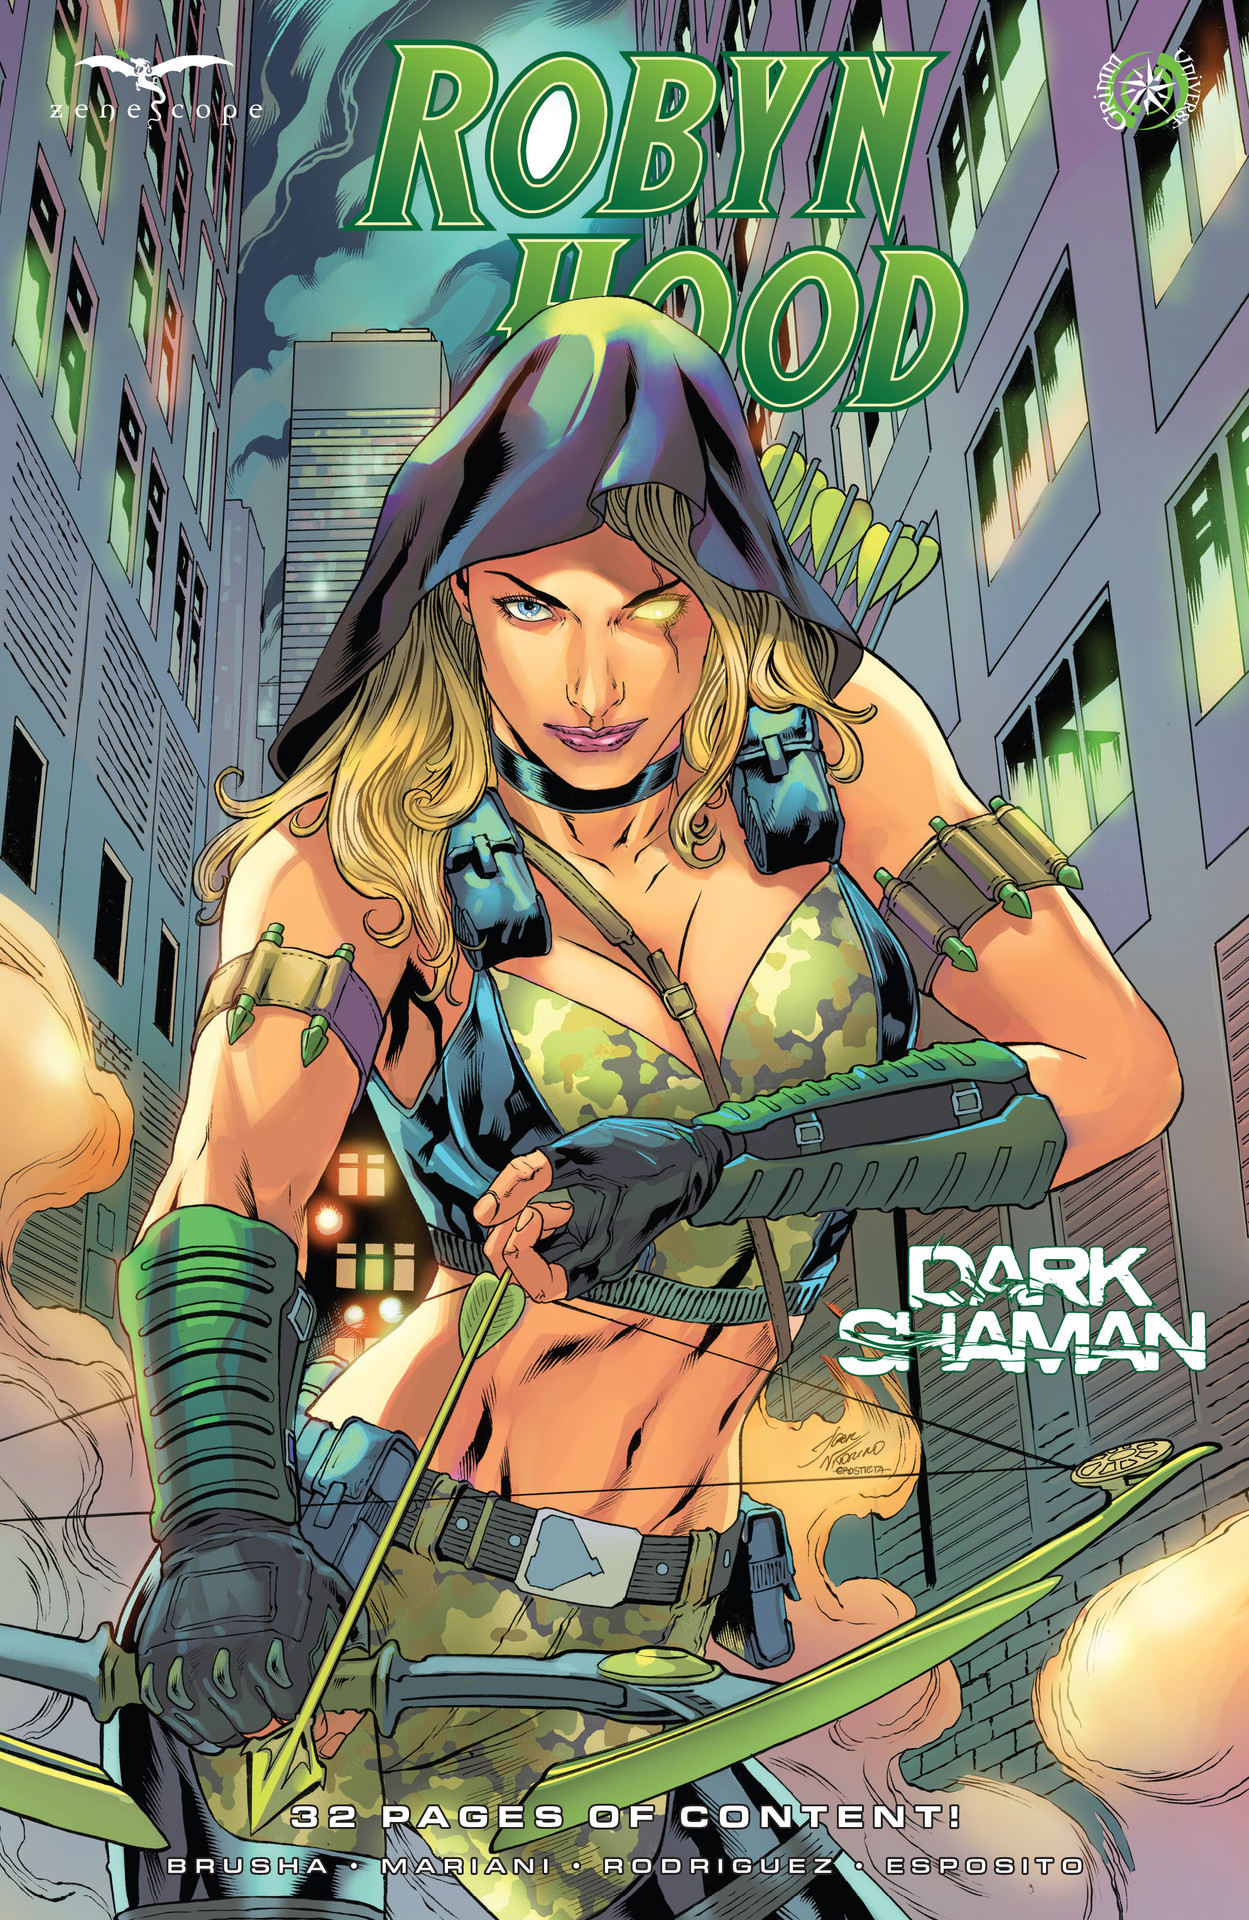 Read online Robyn Hood: Dark Shaman comic -  Issue # Full - 1